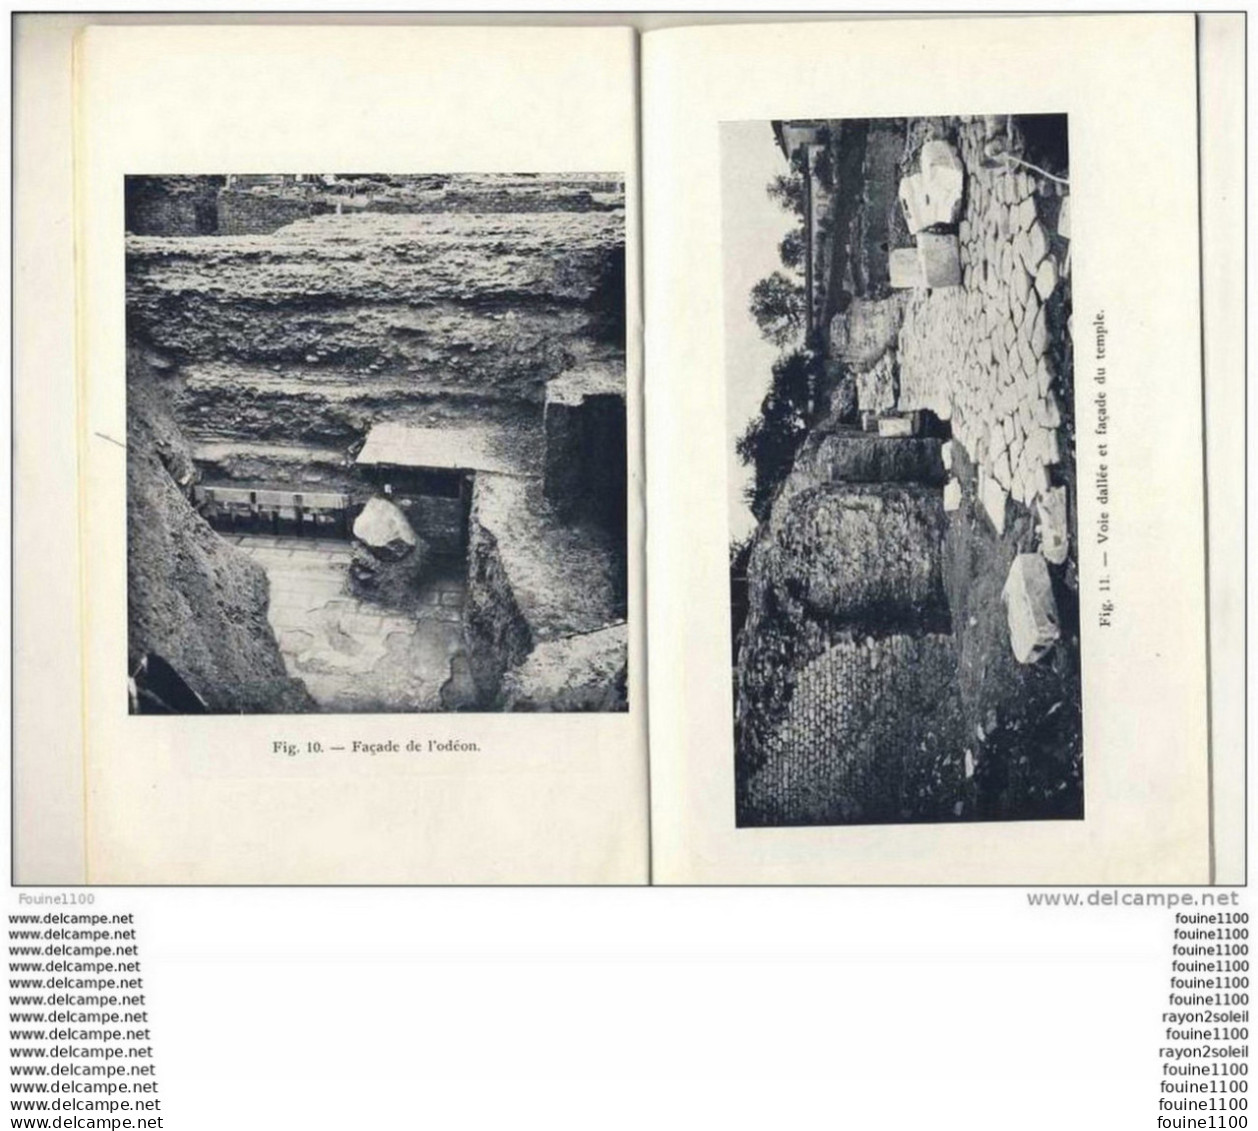 Livret Les Fouilles De Fourvière ( Wuilleumier Professeur Directeur Des Antiquités ) ( Audin Et Cie Lyon 1952 ) Photo - Archeologia